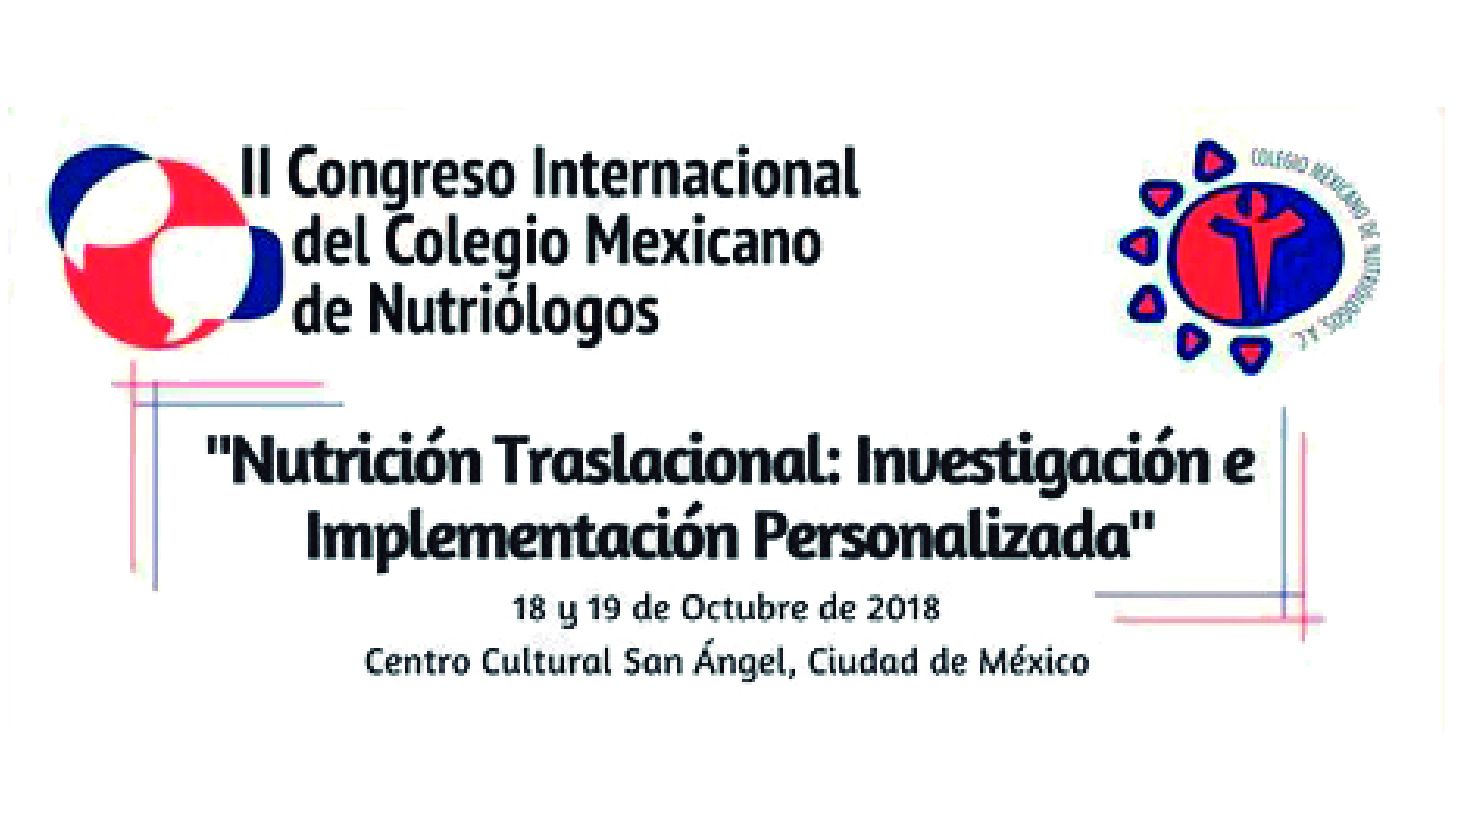 II Congreso Internacional del Colegio Mexicano de Nutriólogos